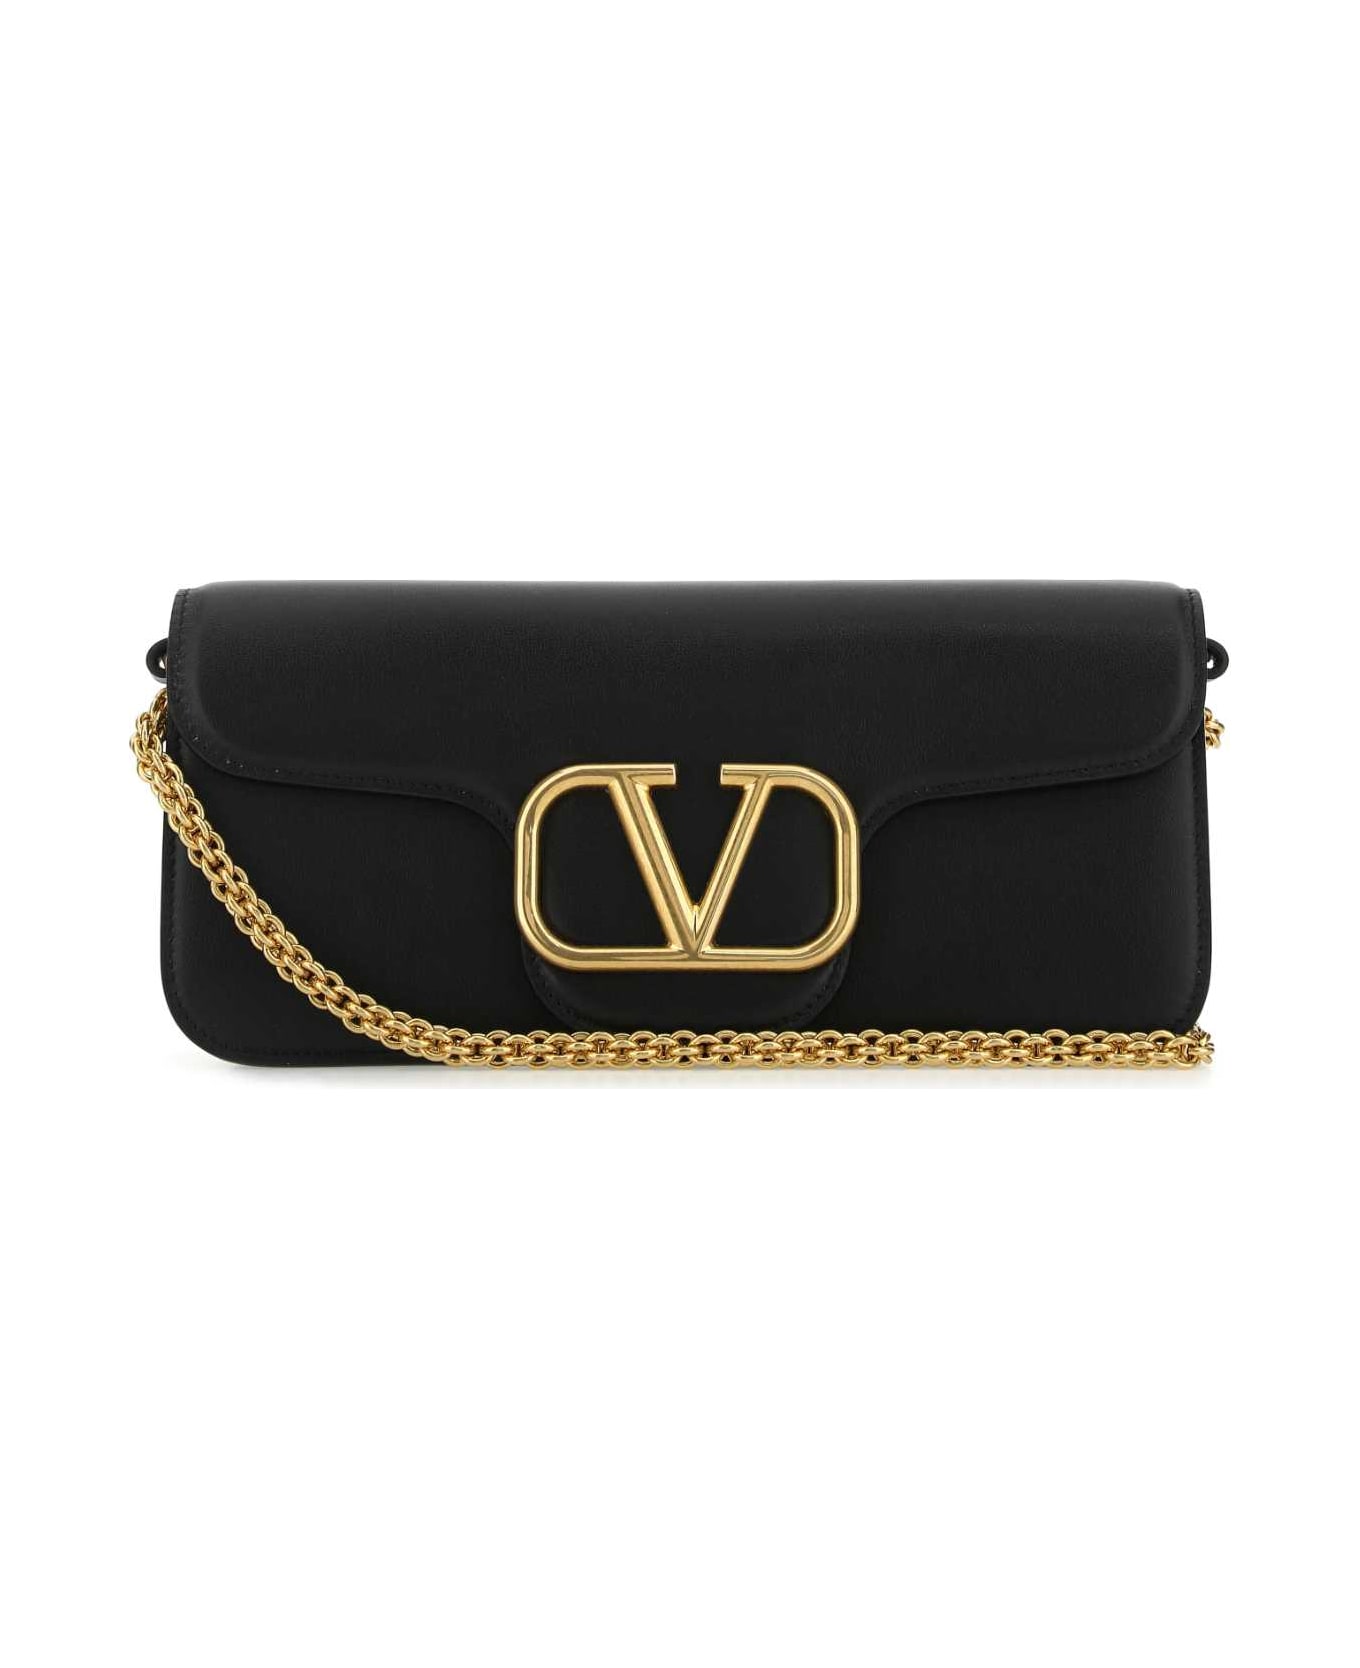 Valentino Garavani Black Leather Locã² Handbag - NERO